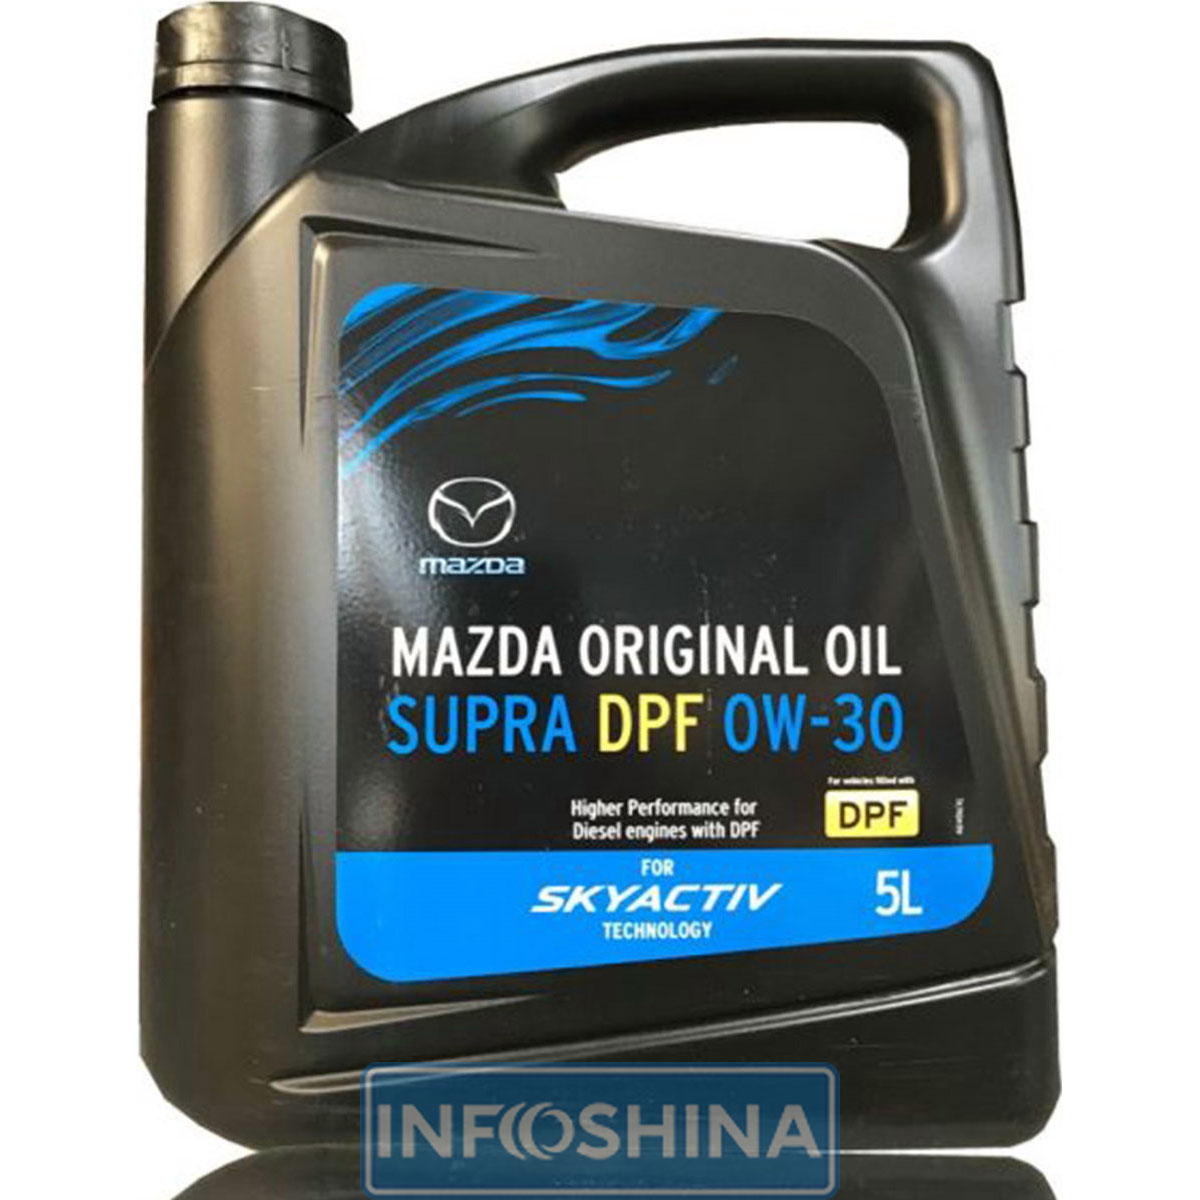 Mazda Original Oil Supra DPF 0W-30